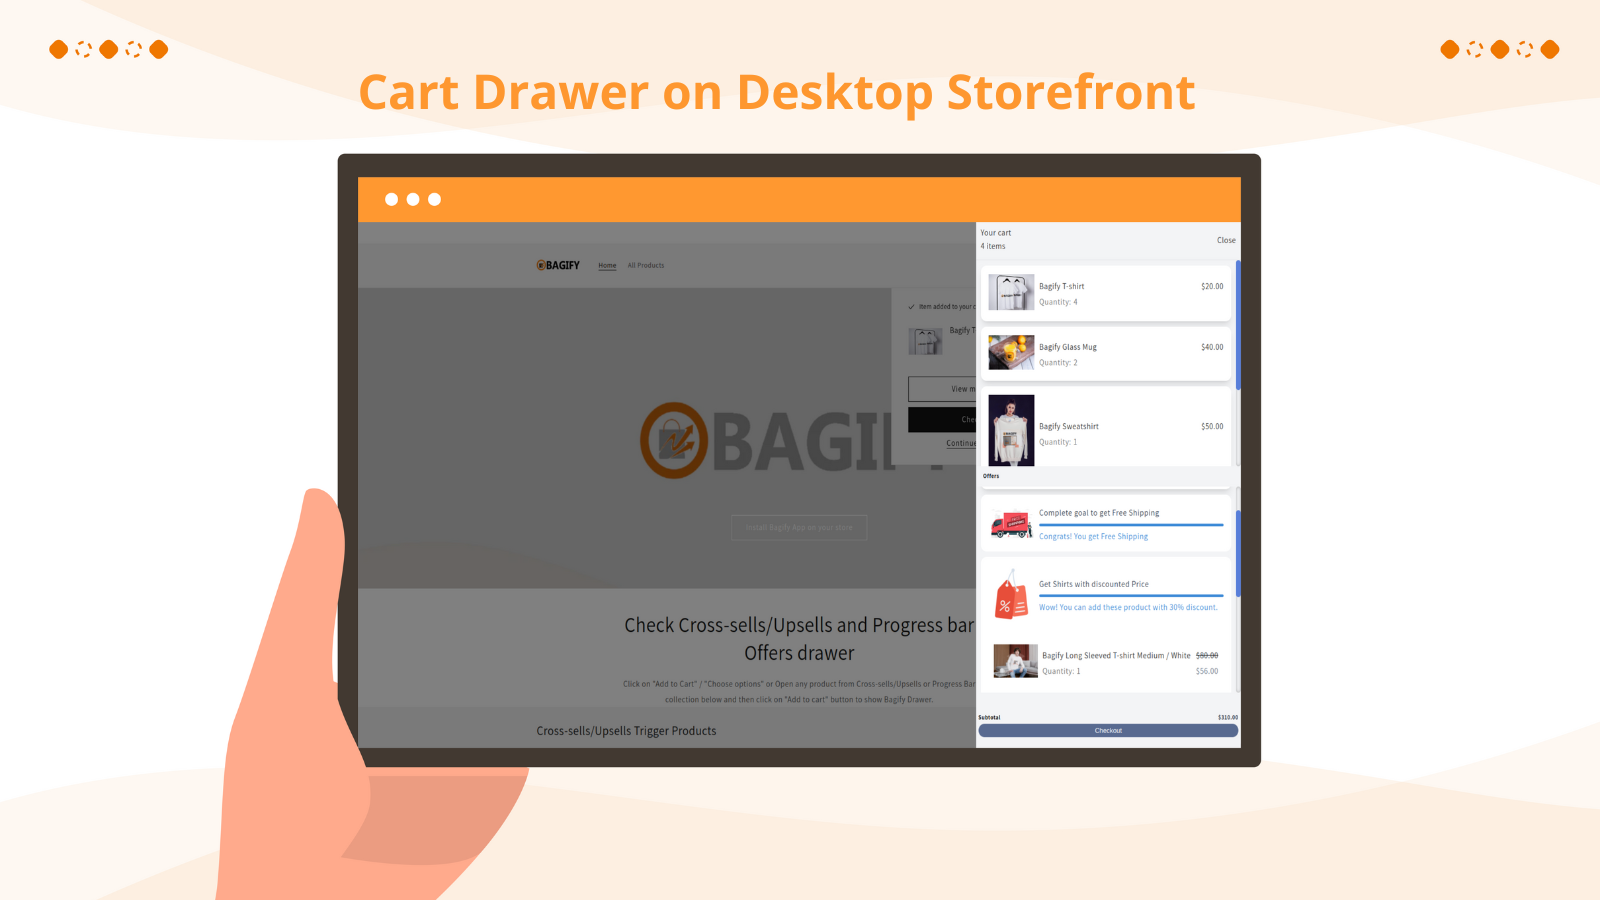 Bagify Cart Drawer on Desktop Storefront